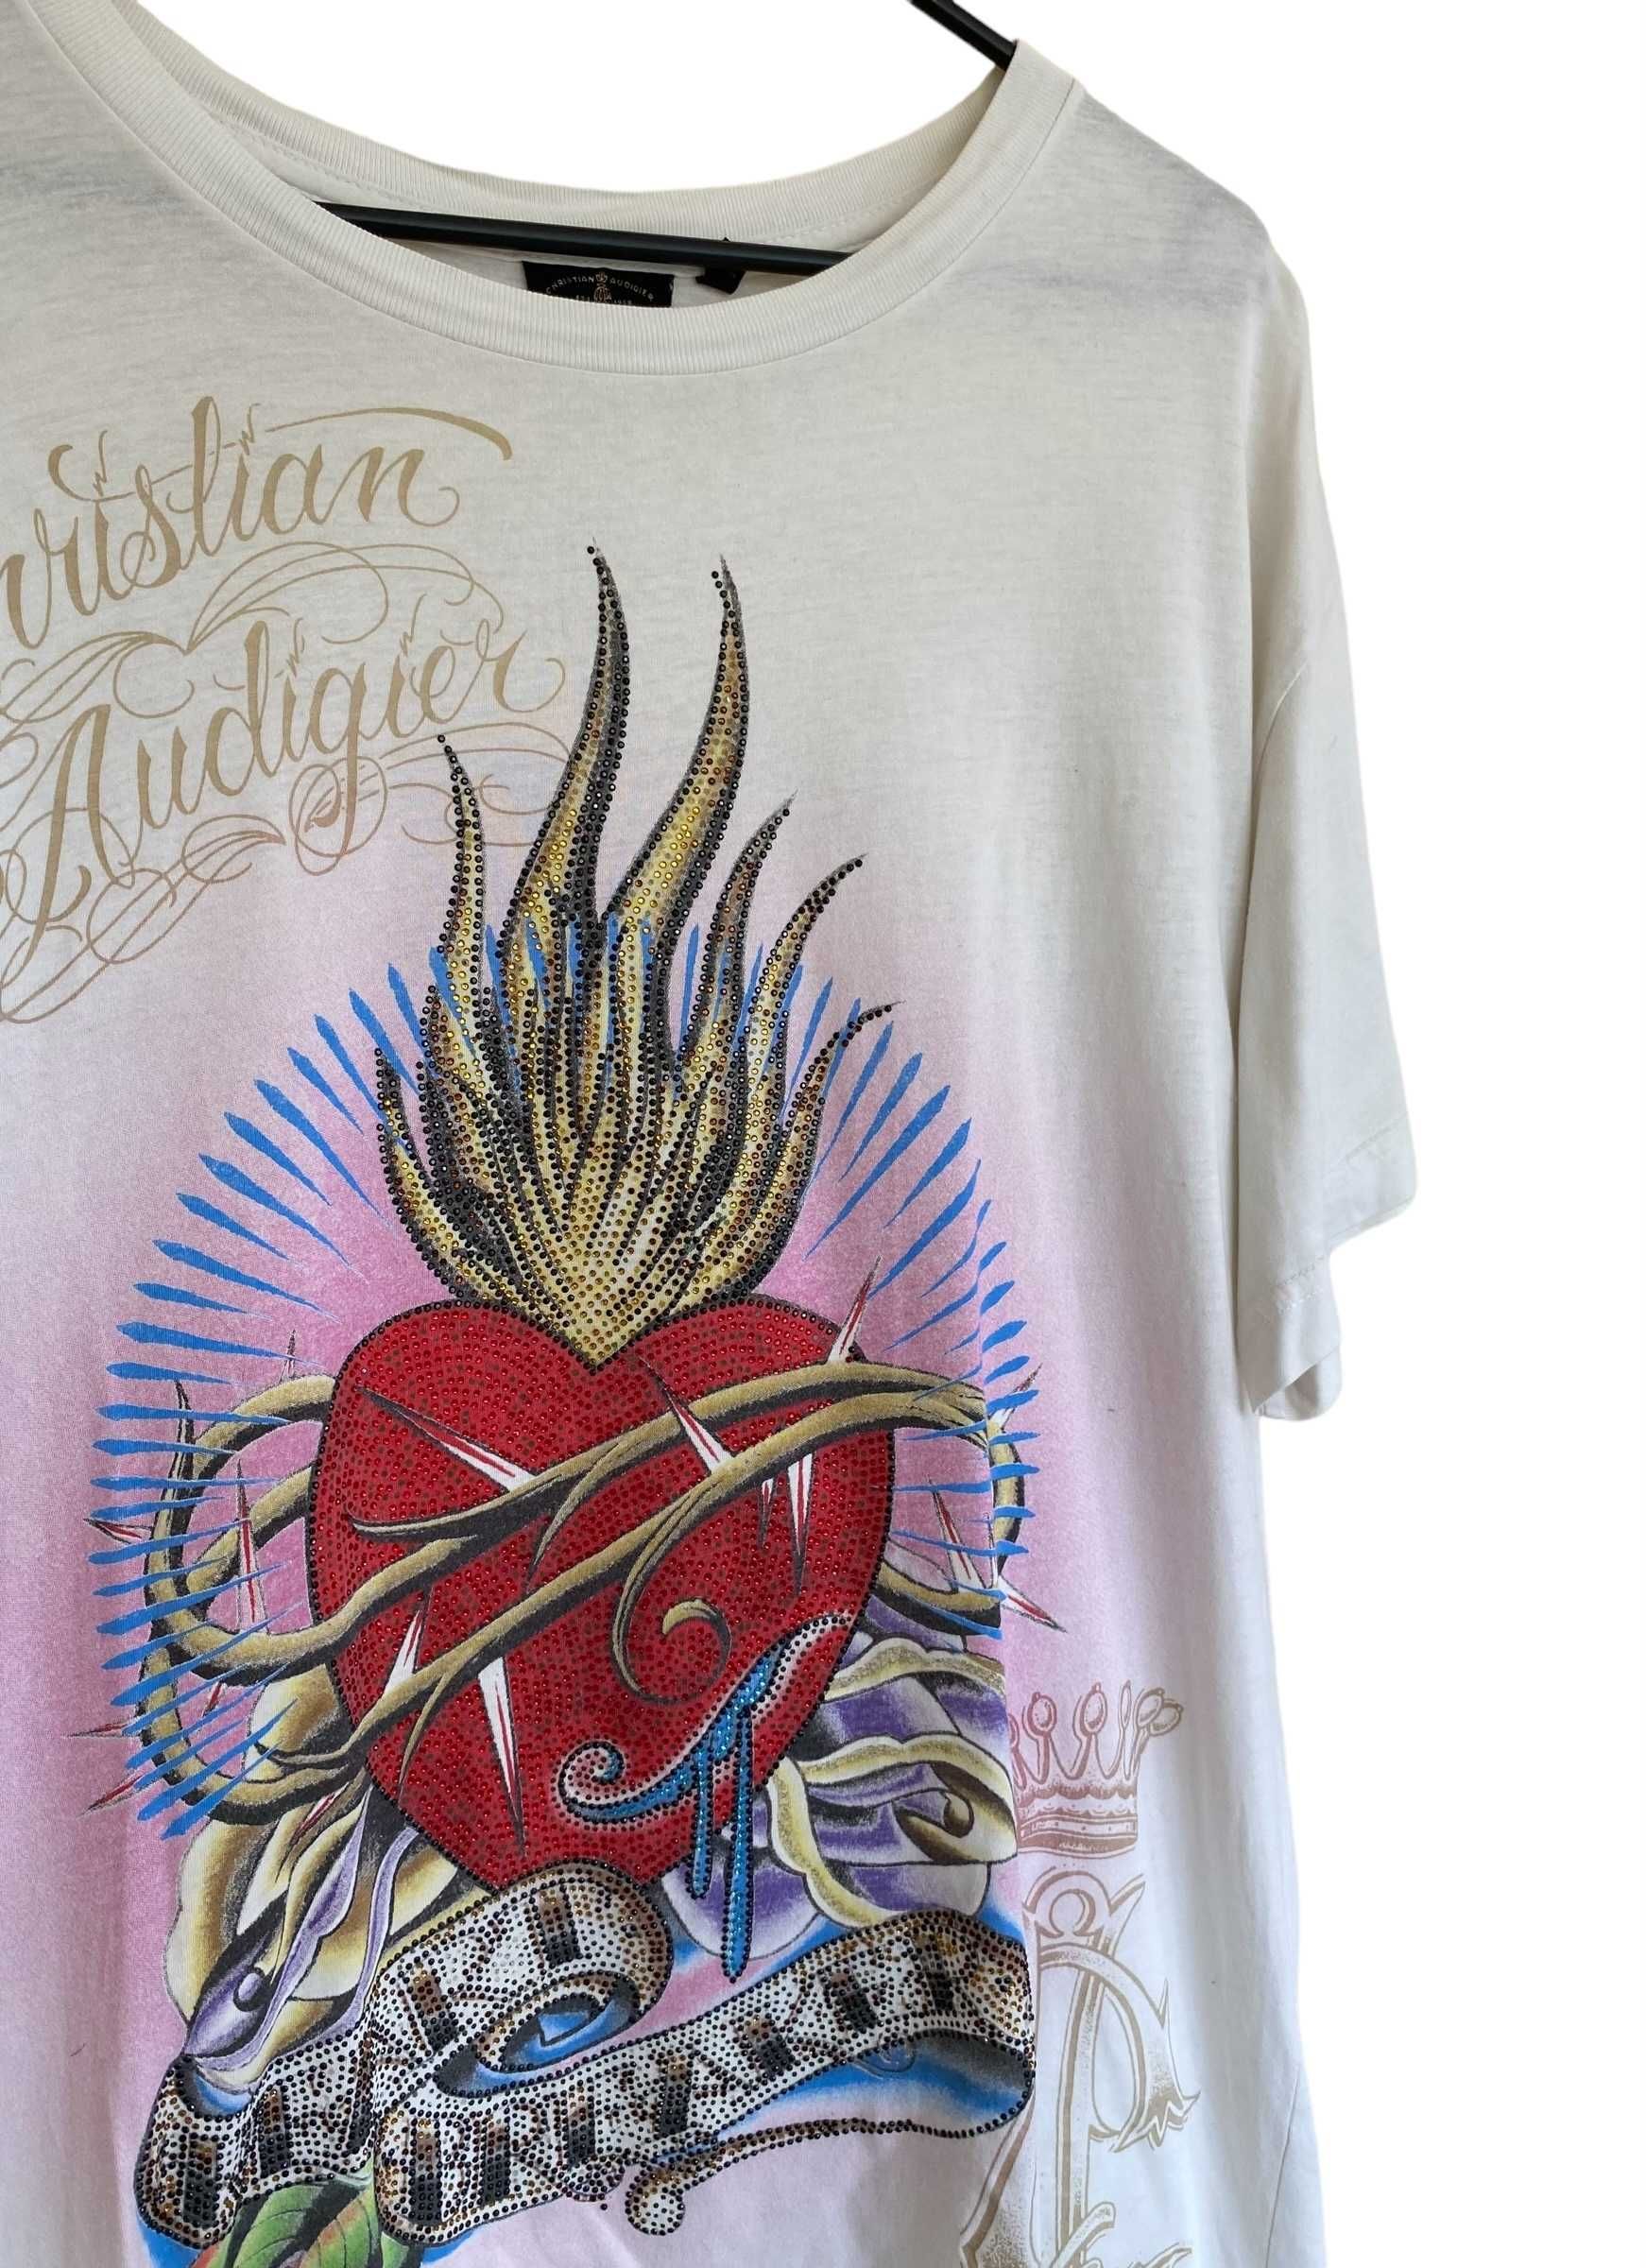 Christian Audiger t-shirt z kryształkami, rozmiar L, stan dobry